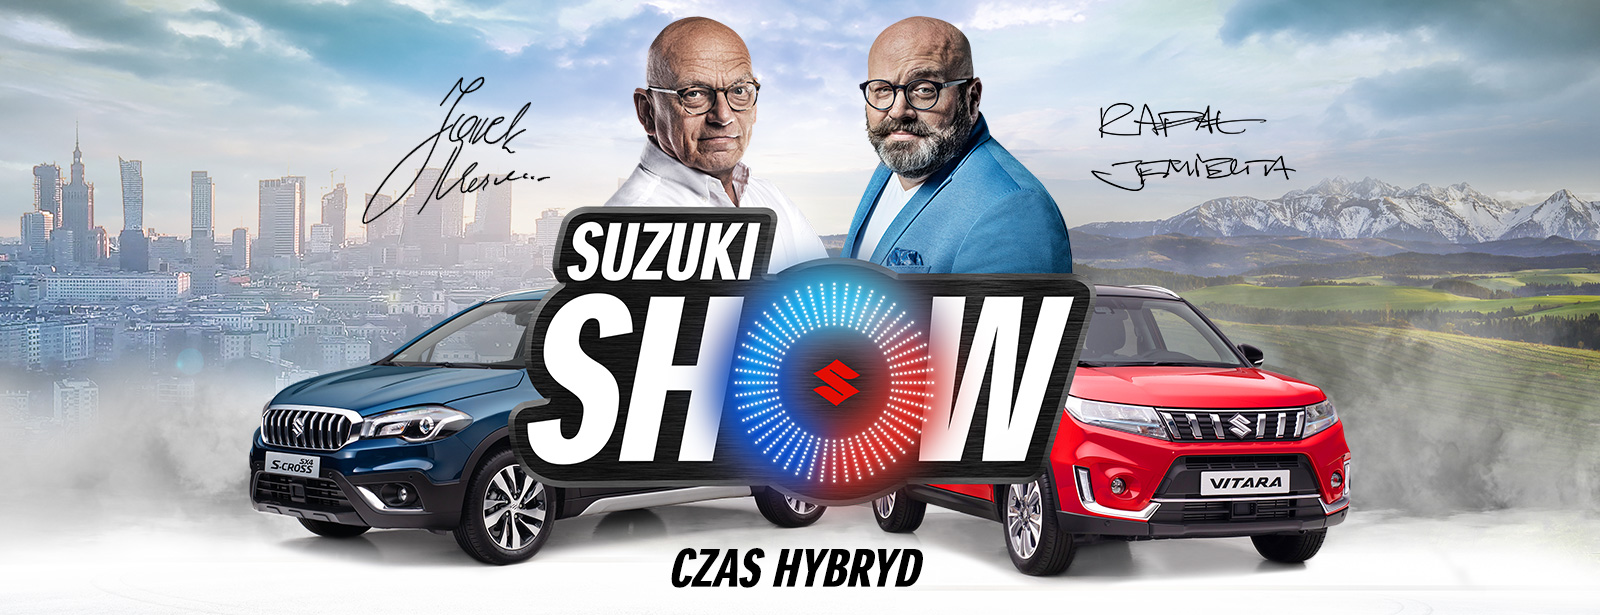 Suzuki Show Jarek Maznas oraz Rafał Jemielit w obecności Suzuki Swift oraz Ignis